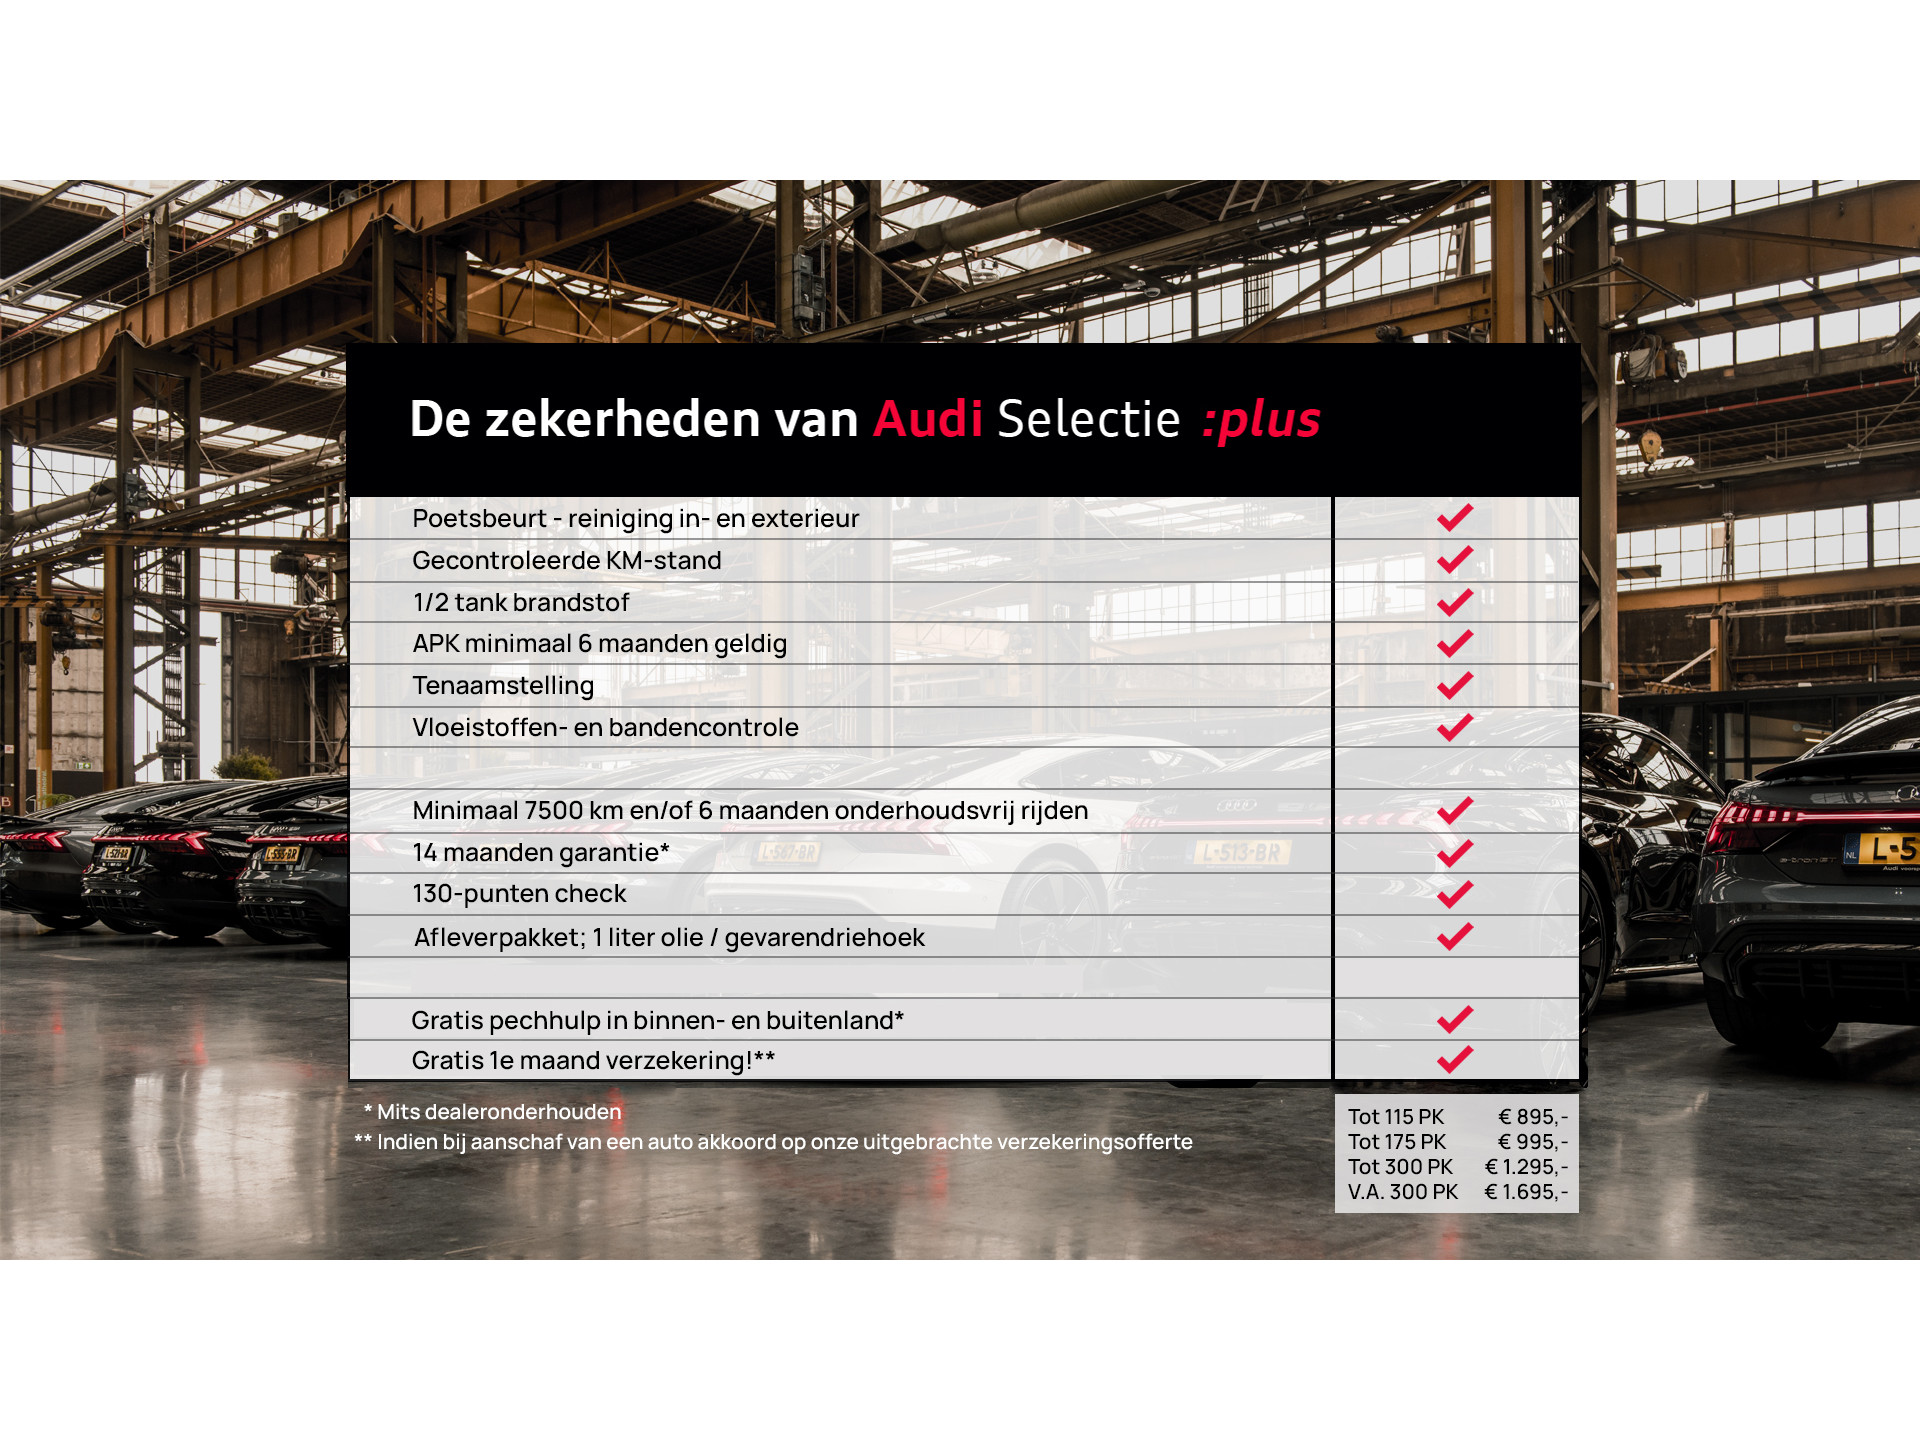 Audi - A1 Sportback 1.0 TFSI 95pk Adrenalin S-Line - 2017